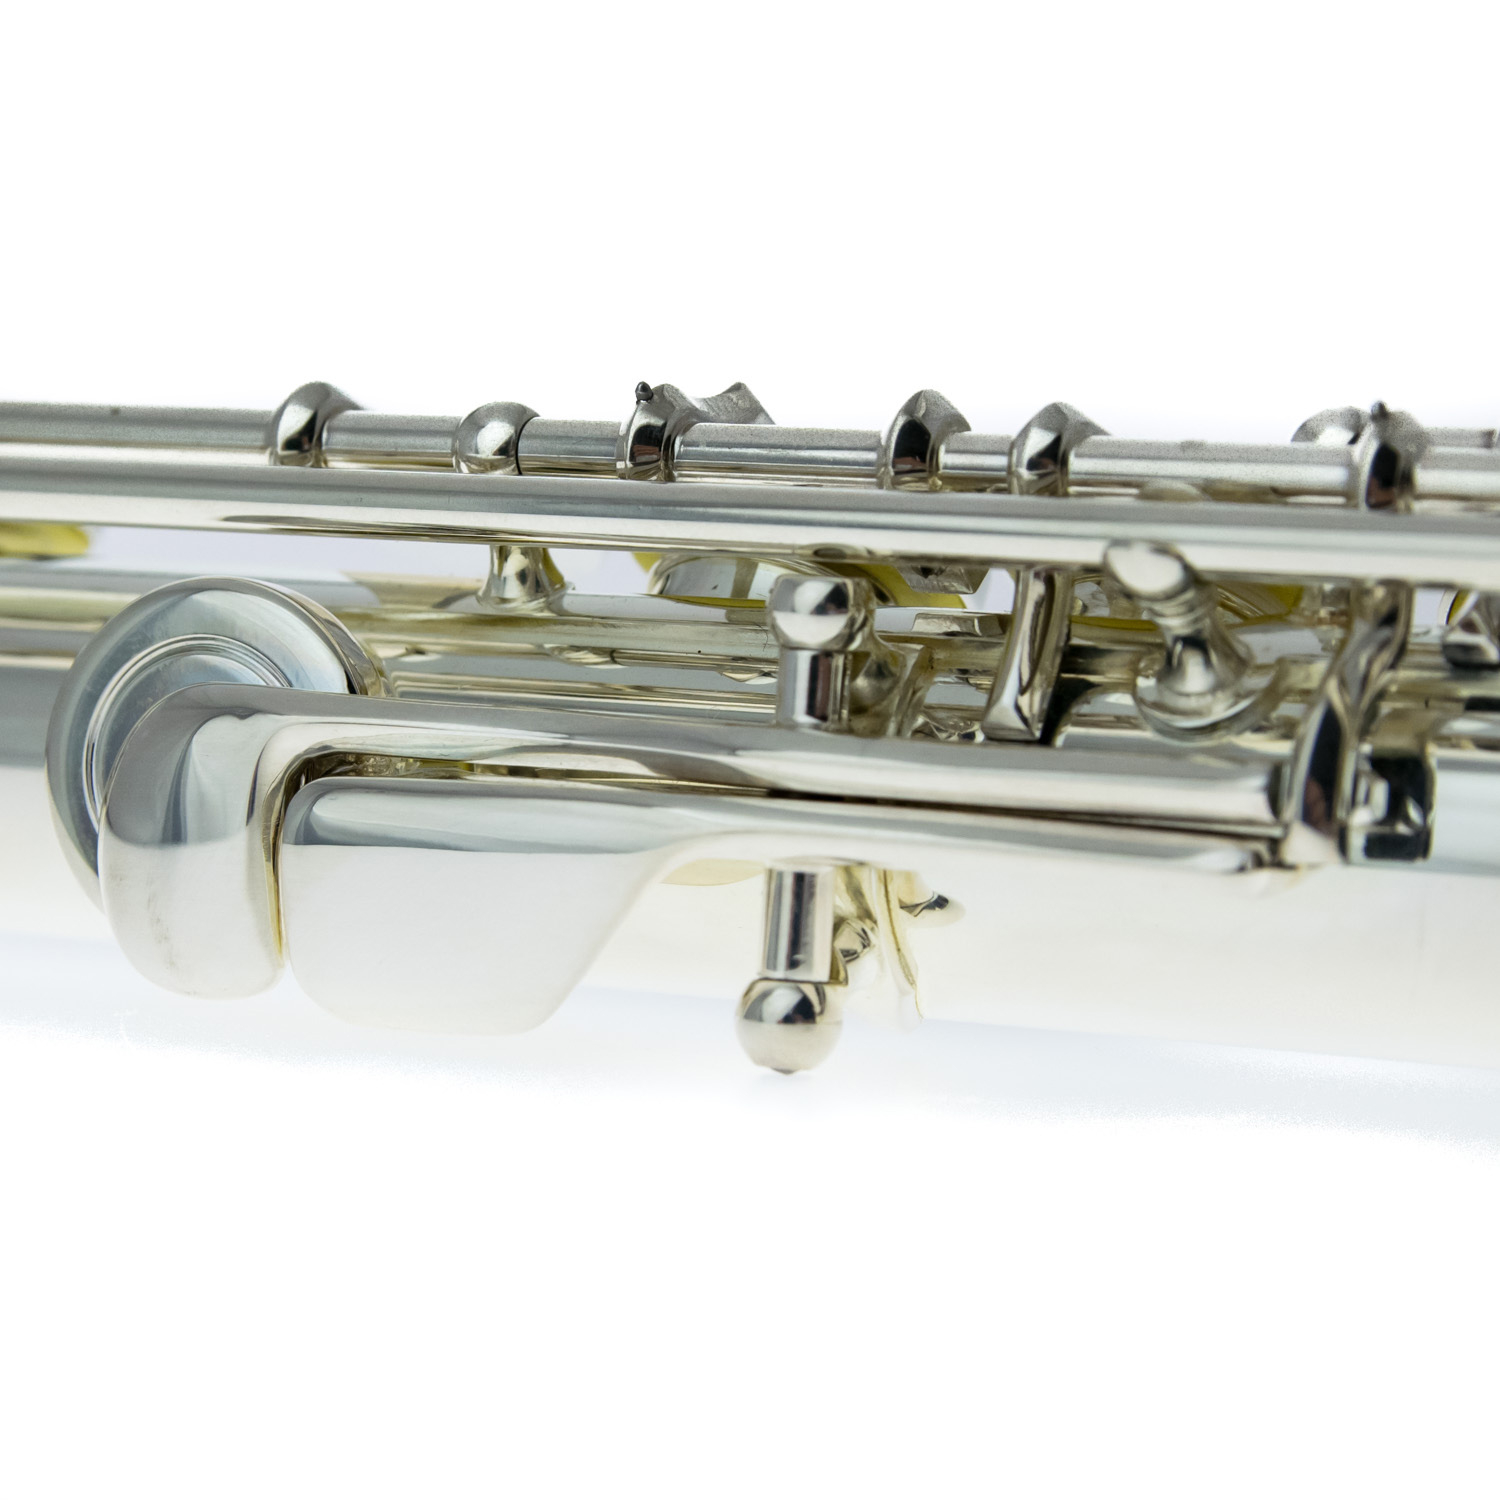 Haynes Flute - Amadeus AF-680 REBO